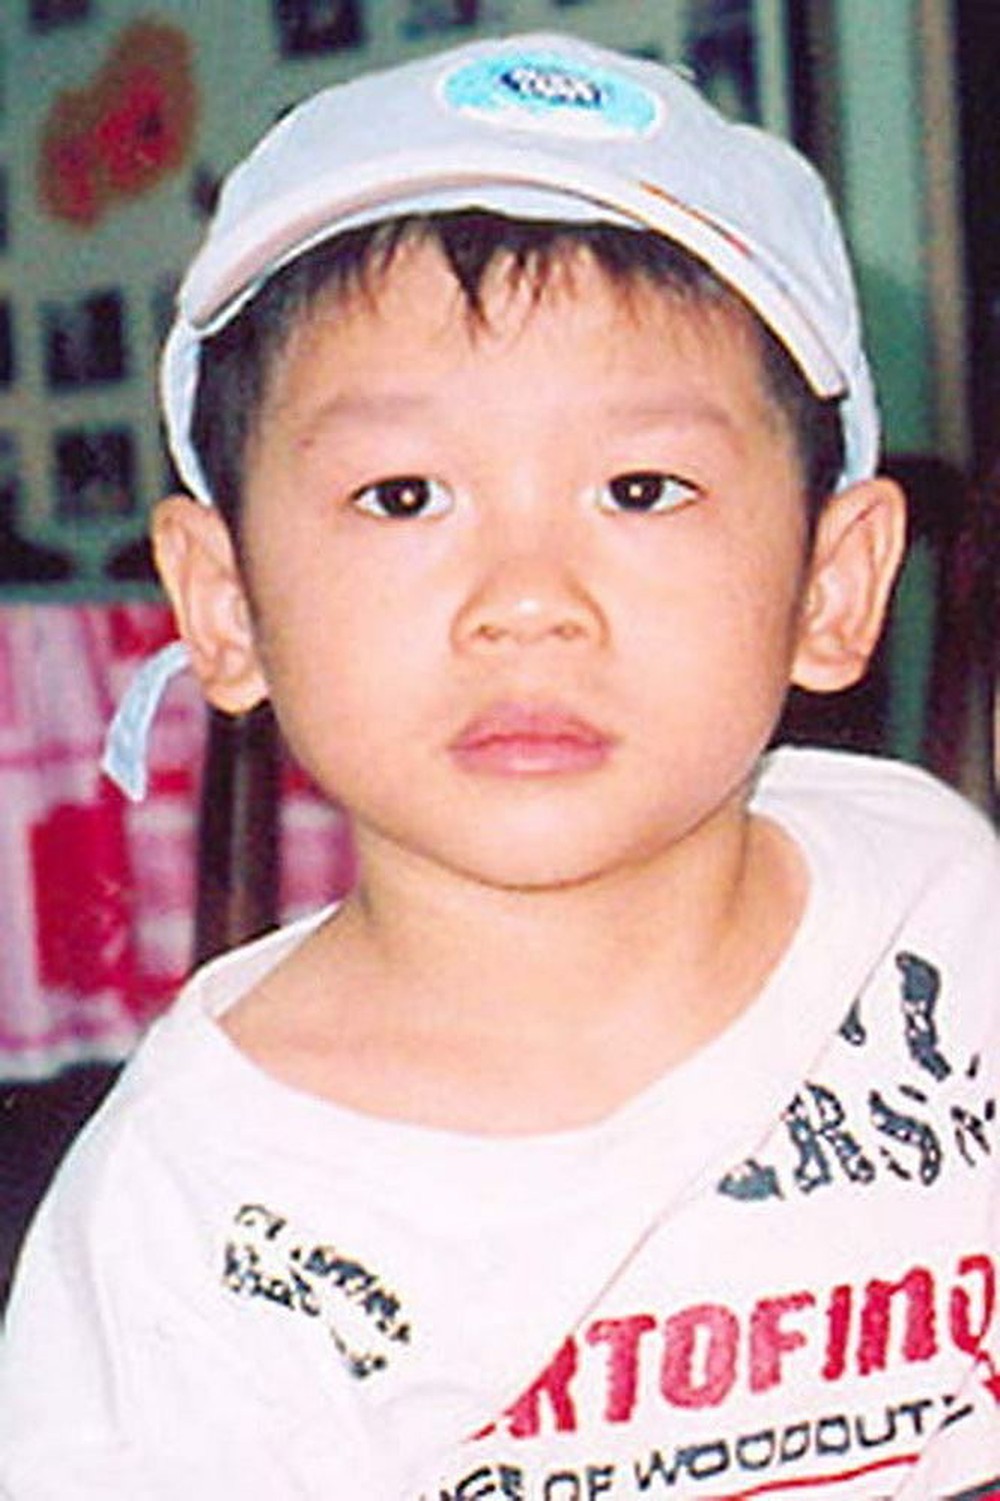  
Cậu bé Phạm Quang Sáng khi còn nhỏ. (Ảnh: VnExpress)